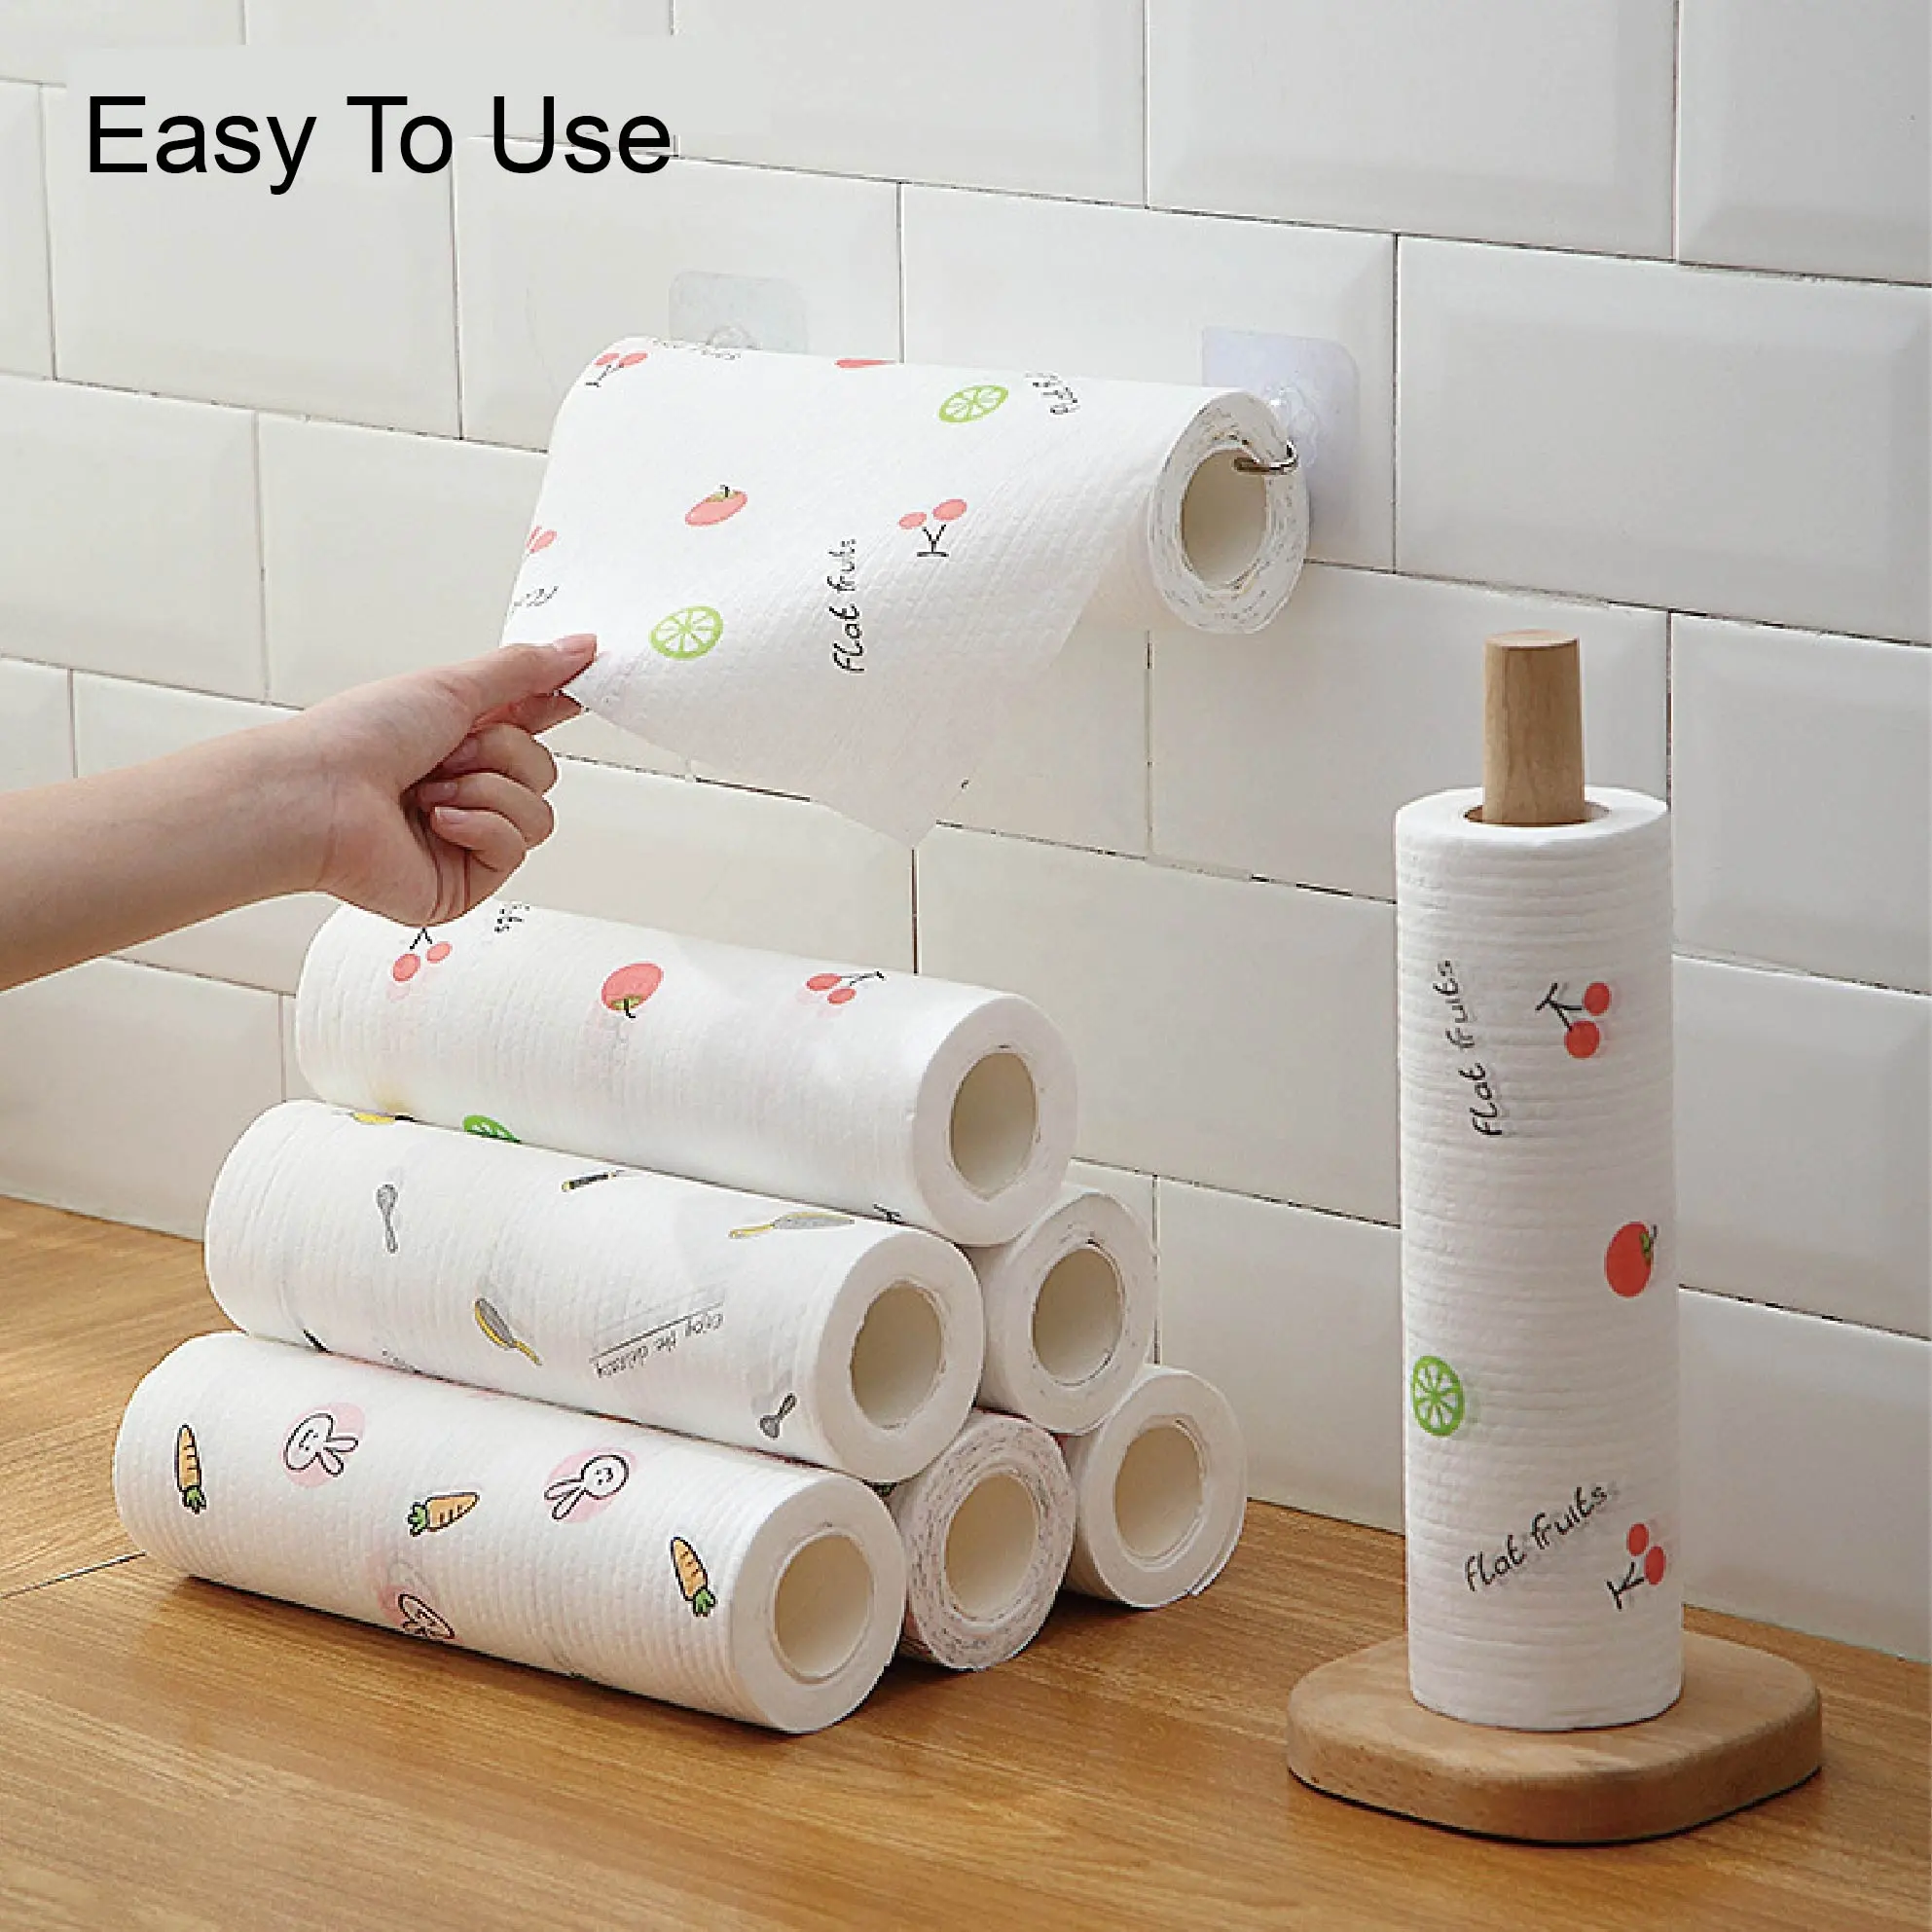 Tea Daily Rag Non Stick Oil Lazi Paper 100% Super Absorbent Cotton Funny Towel Cute Decorative Dish Kitchen Duster Cloth